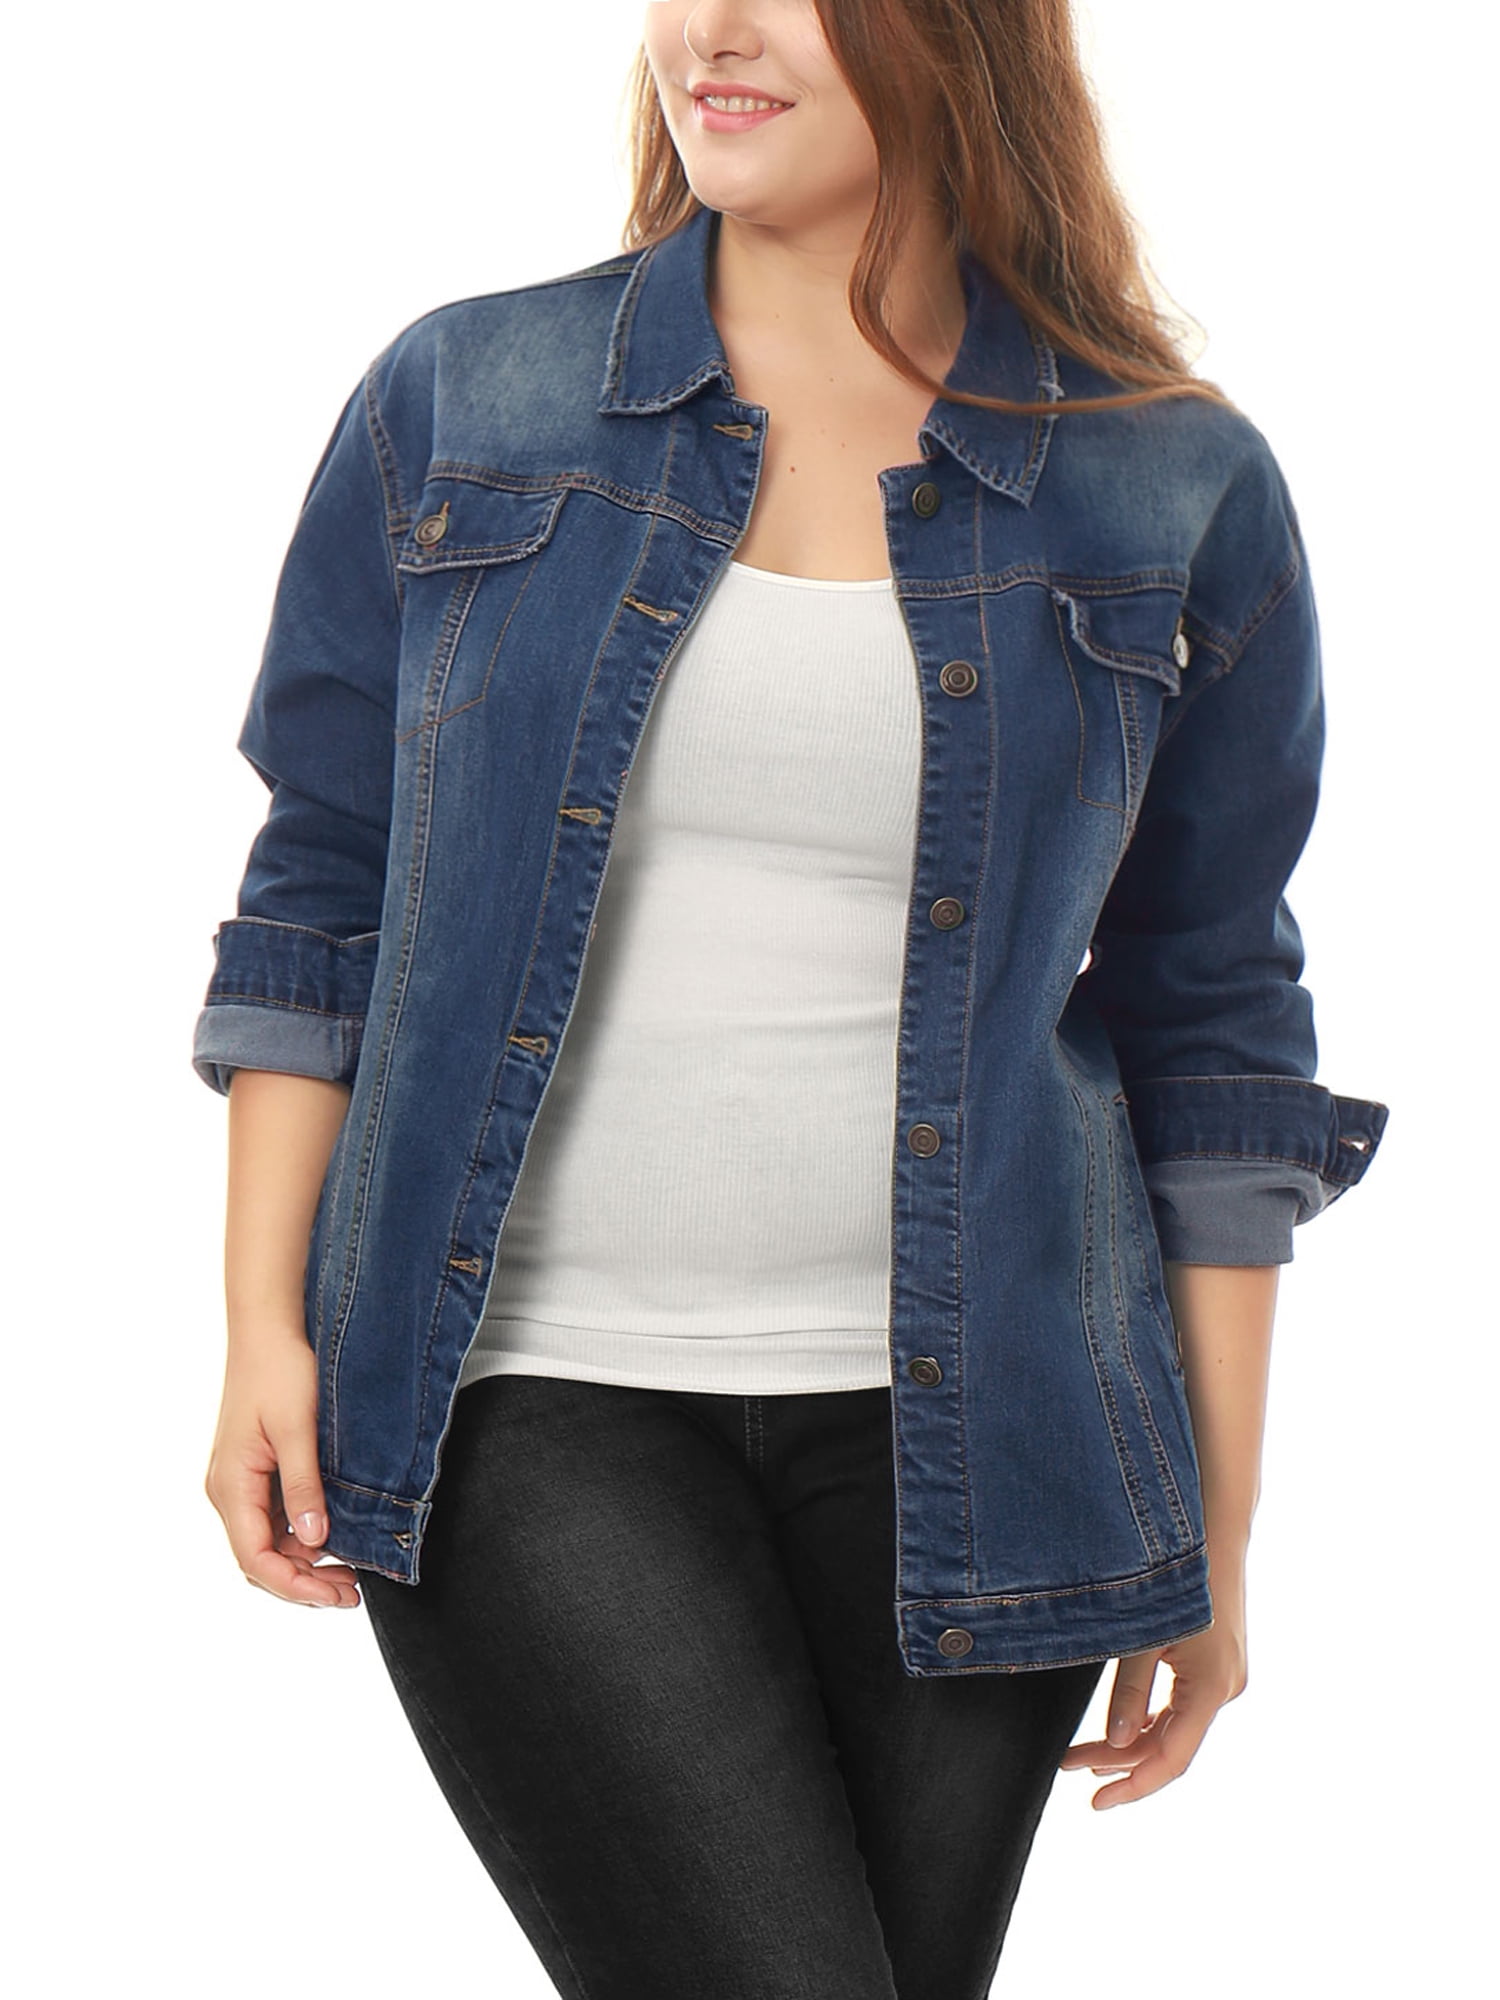 jean jacket plus size women's